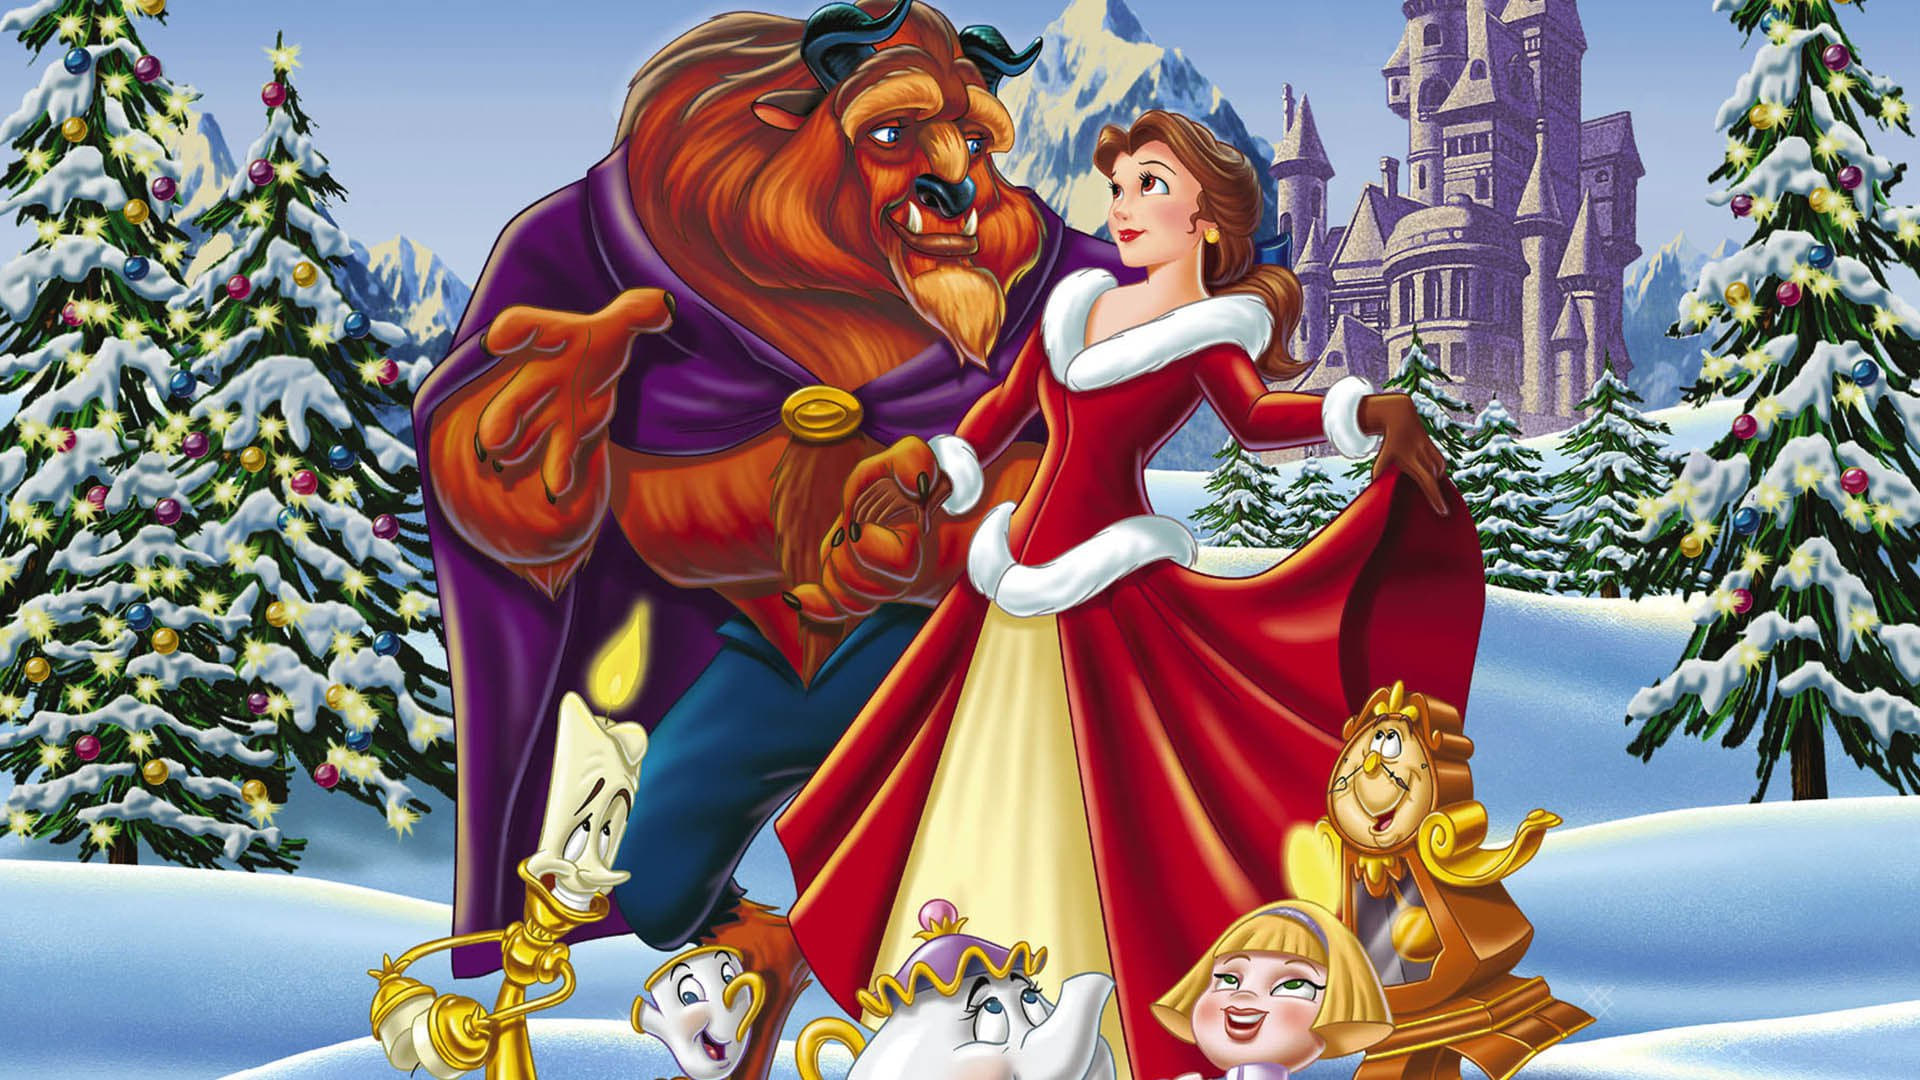 Poster Phim Người Đẹp và Quái Vật: Giáng Sinh Kỳ Diệu (Beauty and the Beast: The Enchanted Christmas)